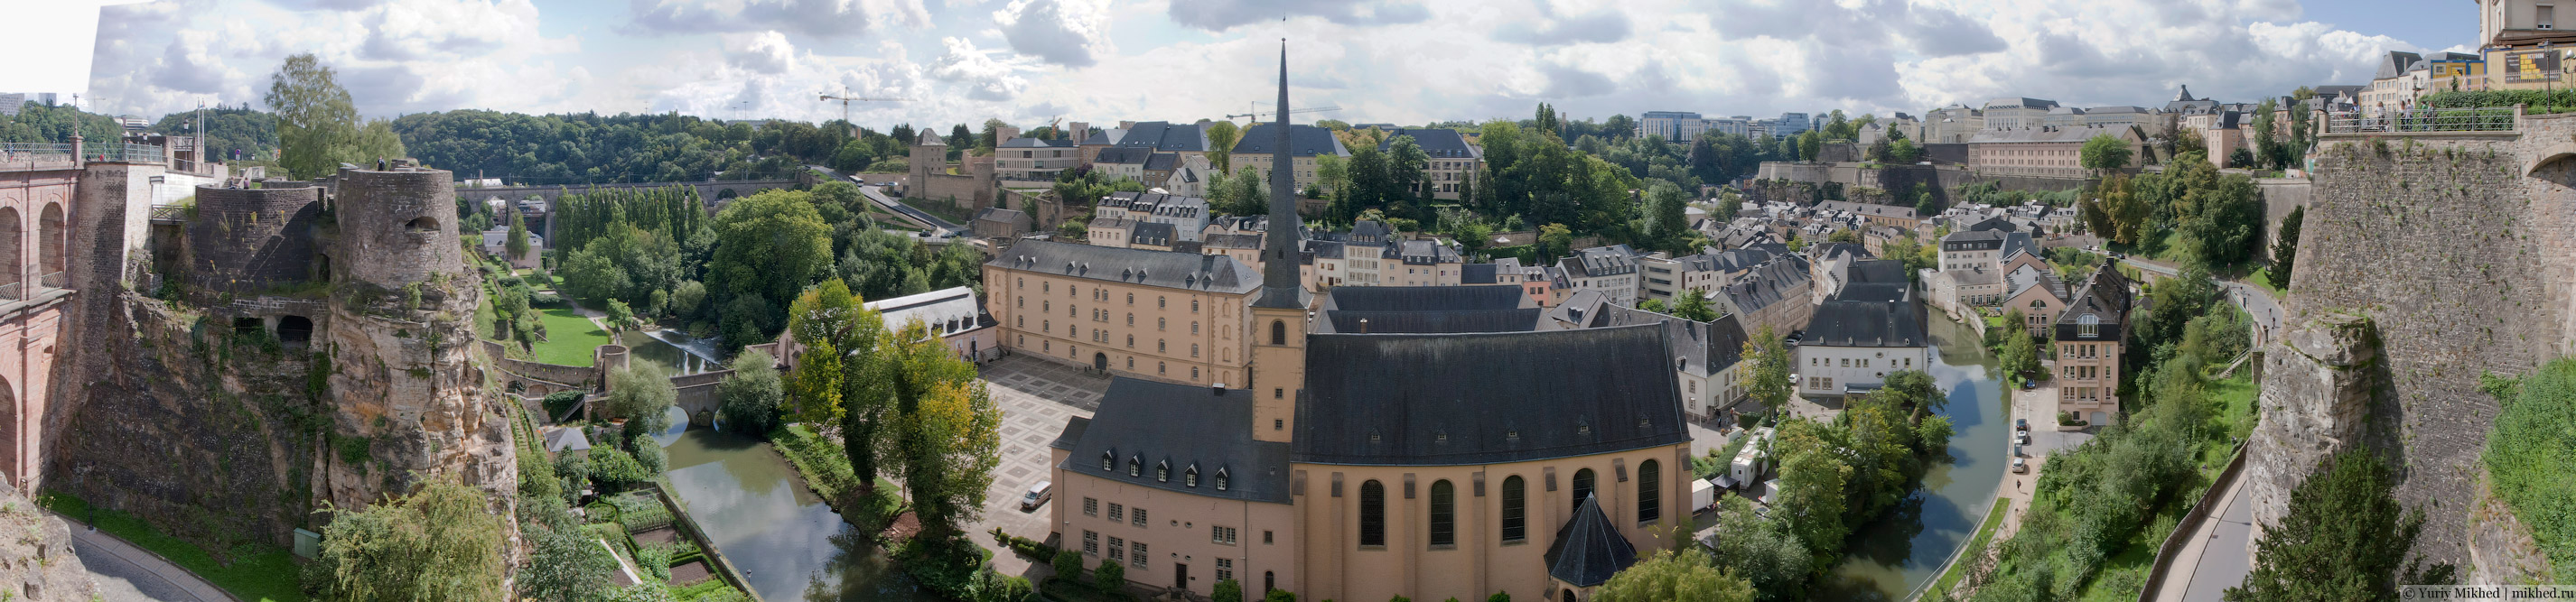 Панорама історичної частини Люксембургу